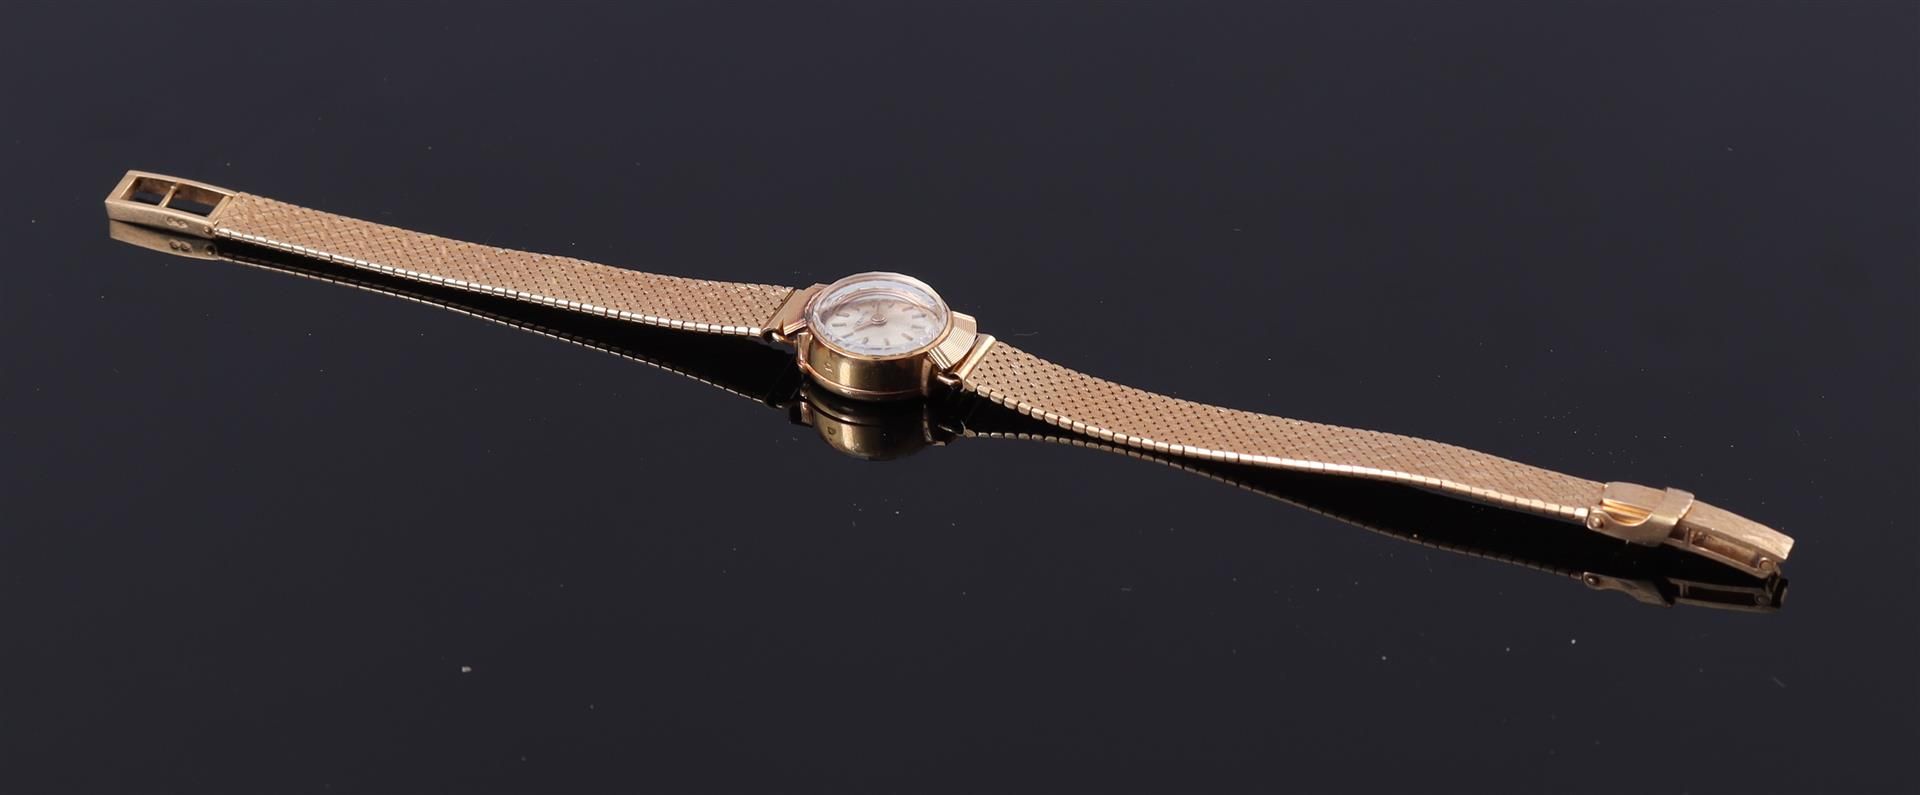 Zenith Swiss wristwatch - Image 2 of 2